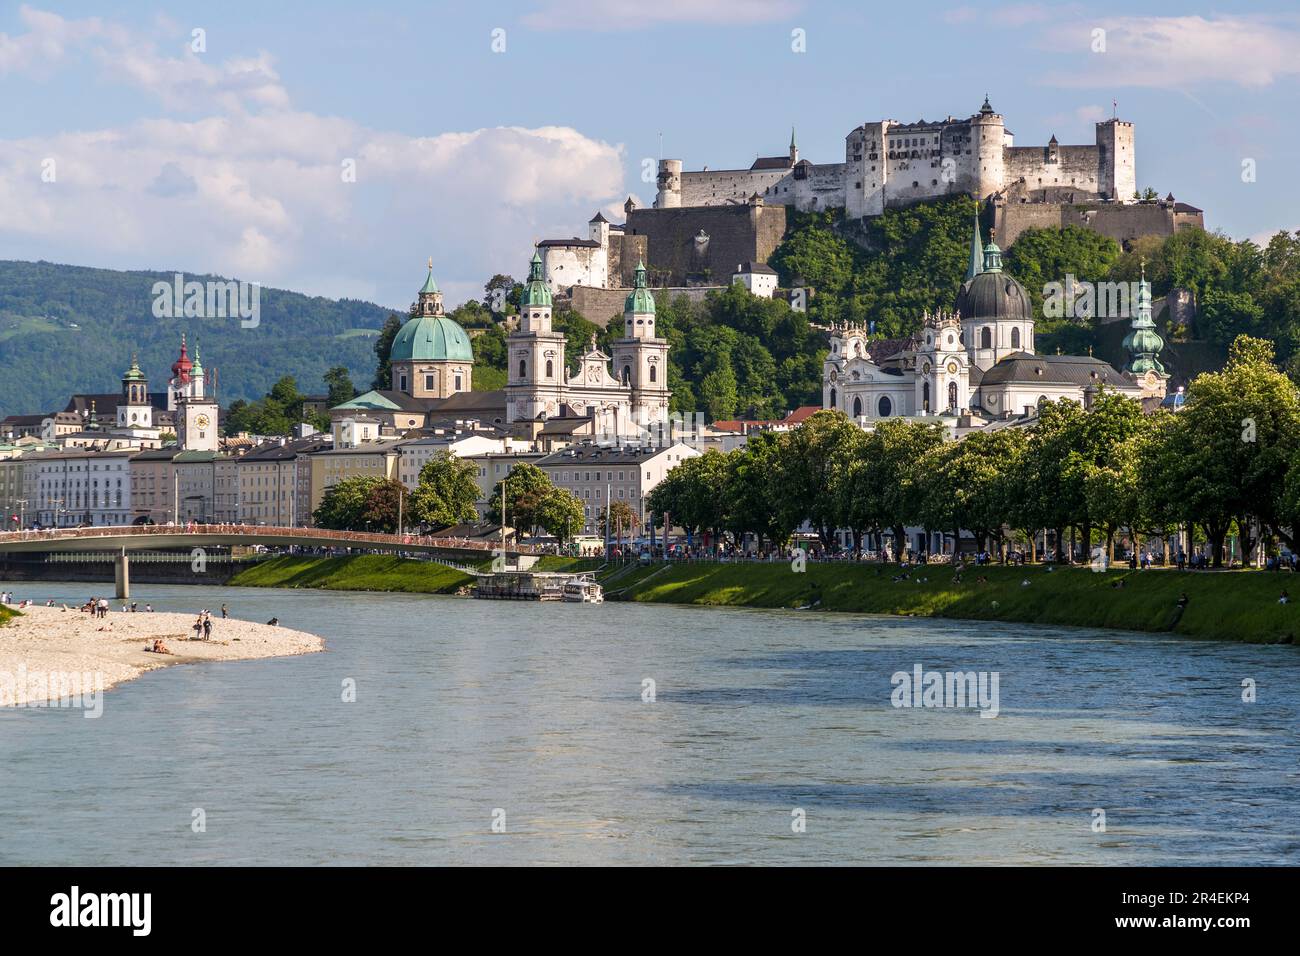 Vistas a la ciudad de Salzburgo con la fortaleza Hohensalzburg y el barrio de la catedral. Salzburgo, Austria Foto de stock